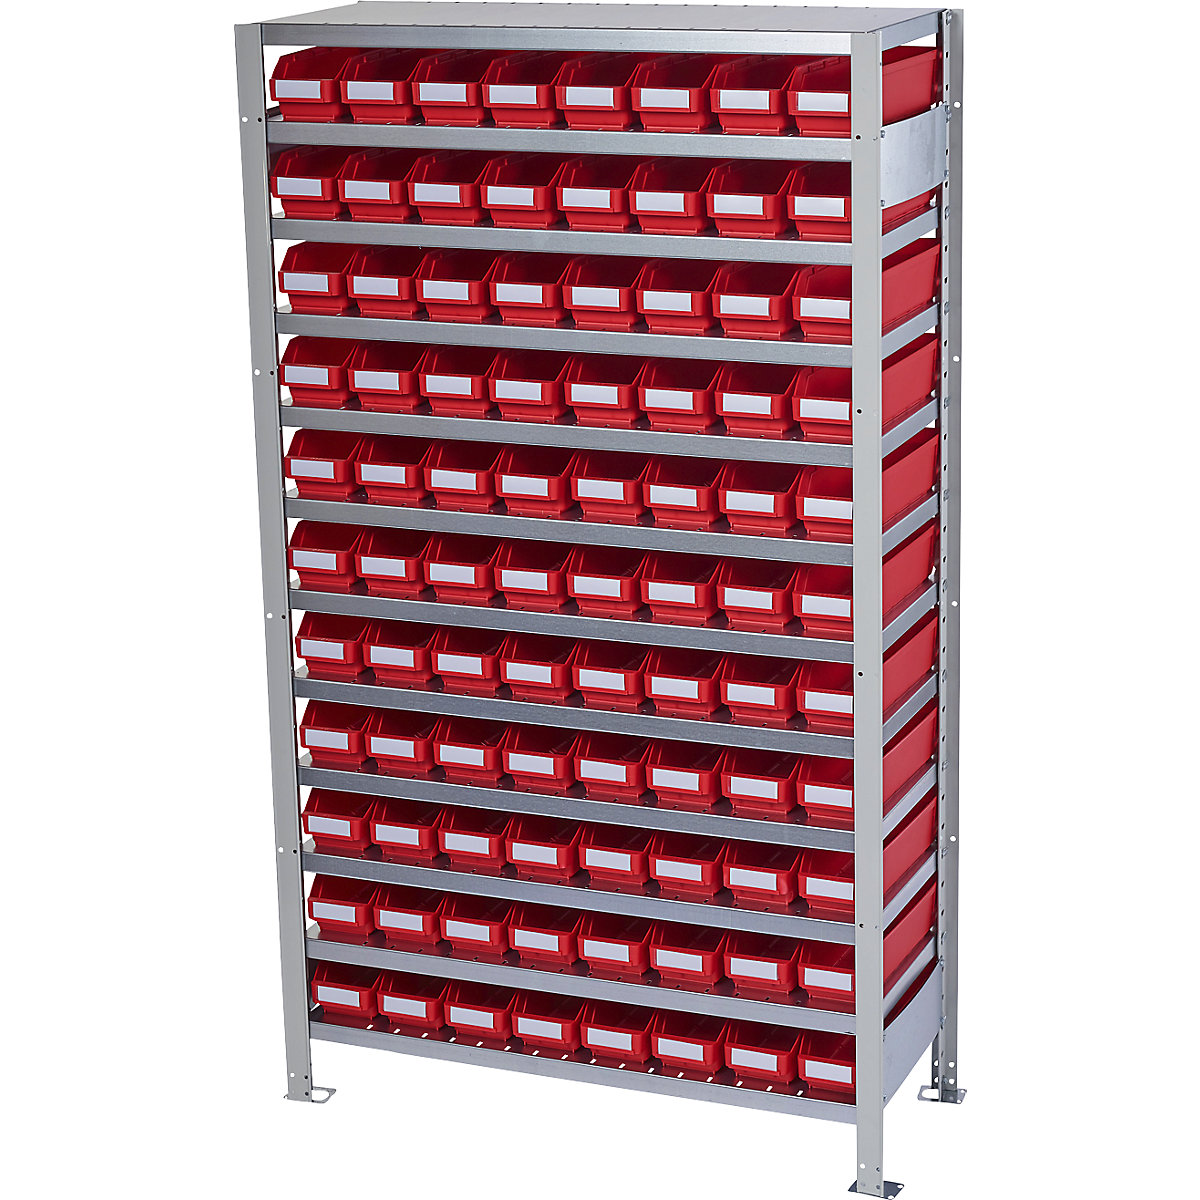 Zásuvný regál s regálovými přepravkami – STEMO, výška regálu 1790 mm, základní regál, hloubka 400 mm, 88 přepravek červených-16